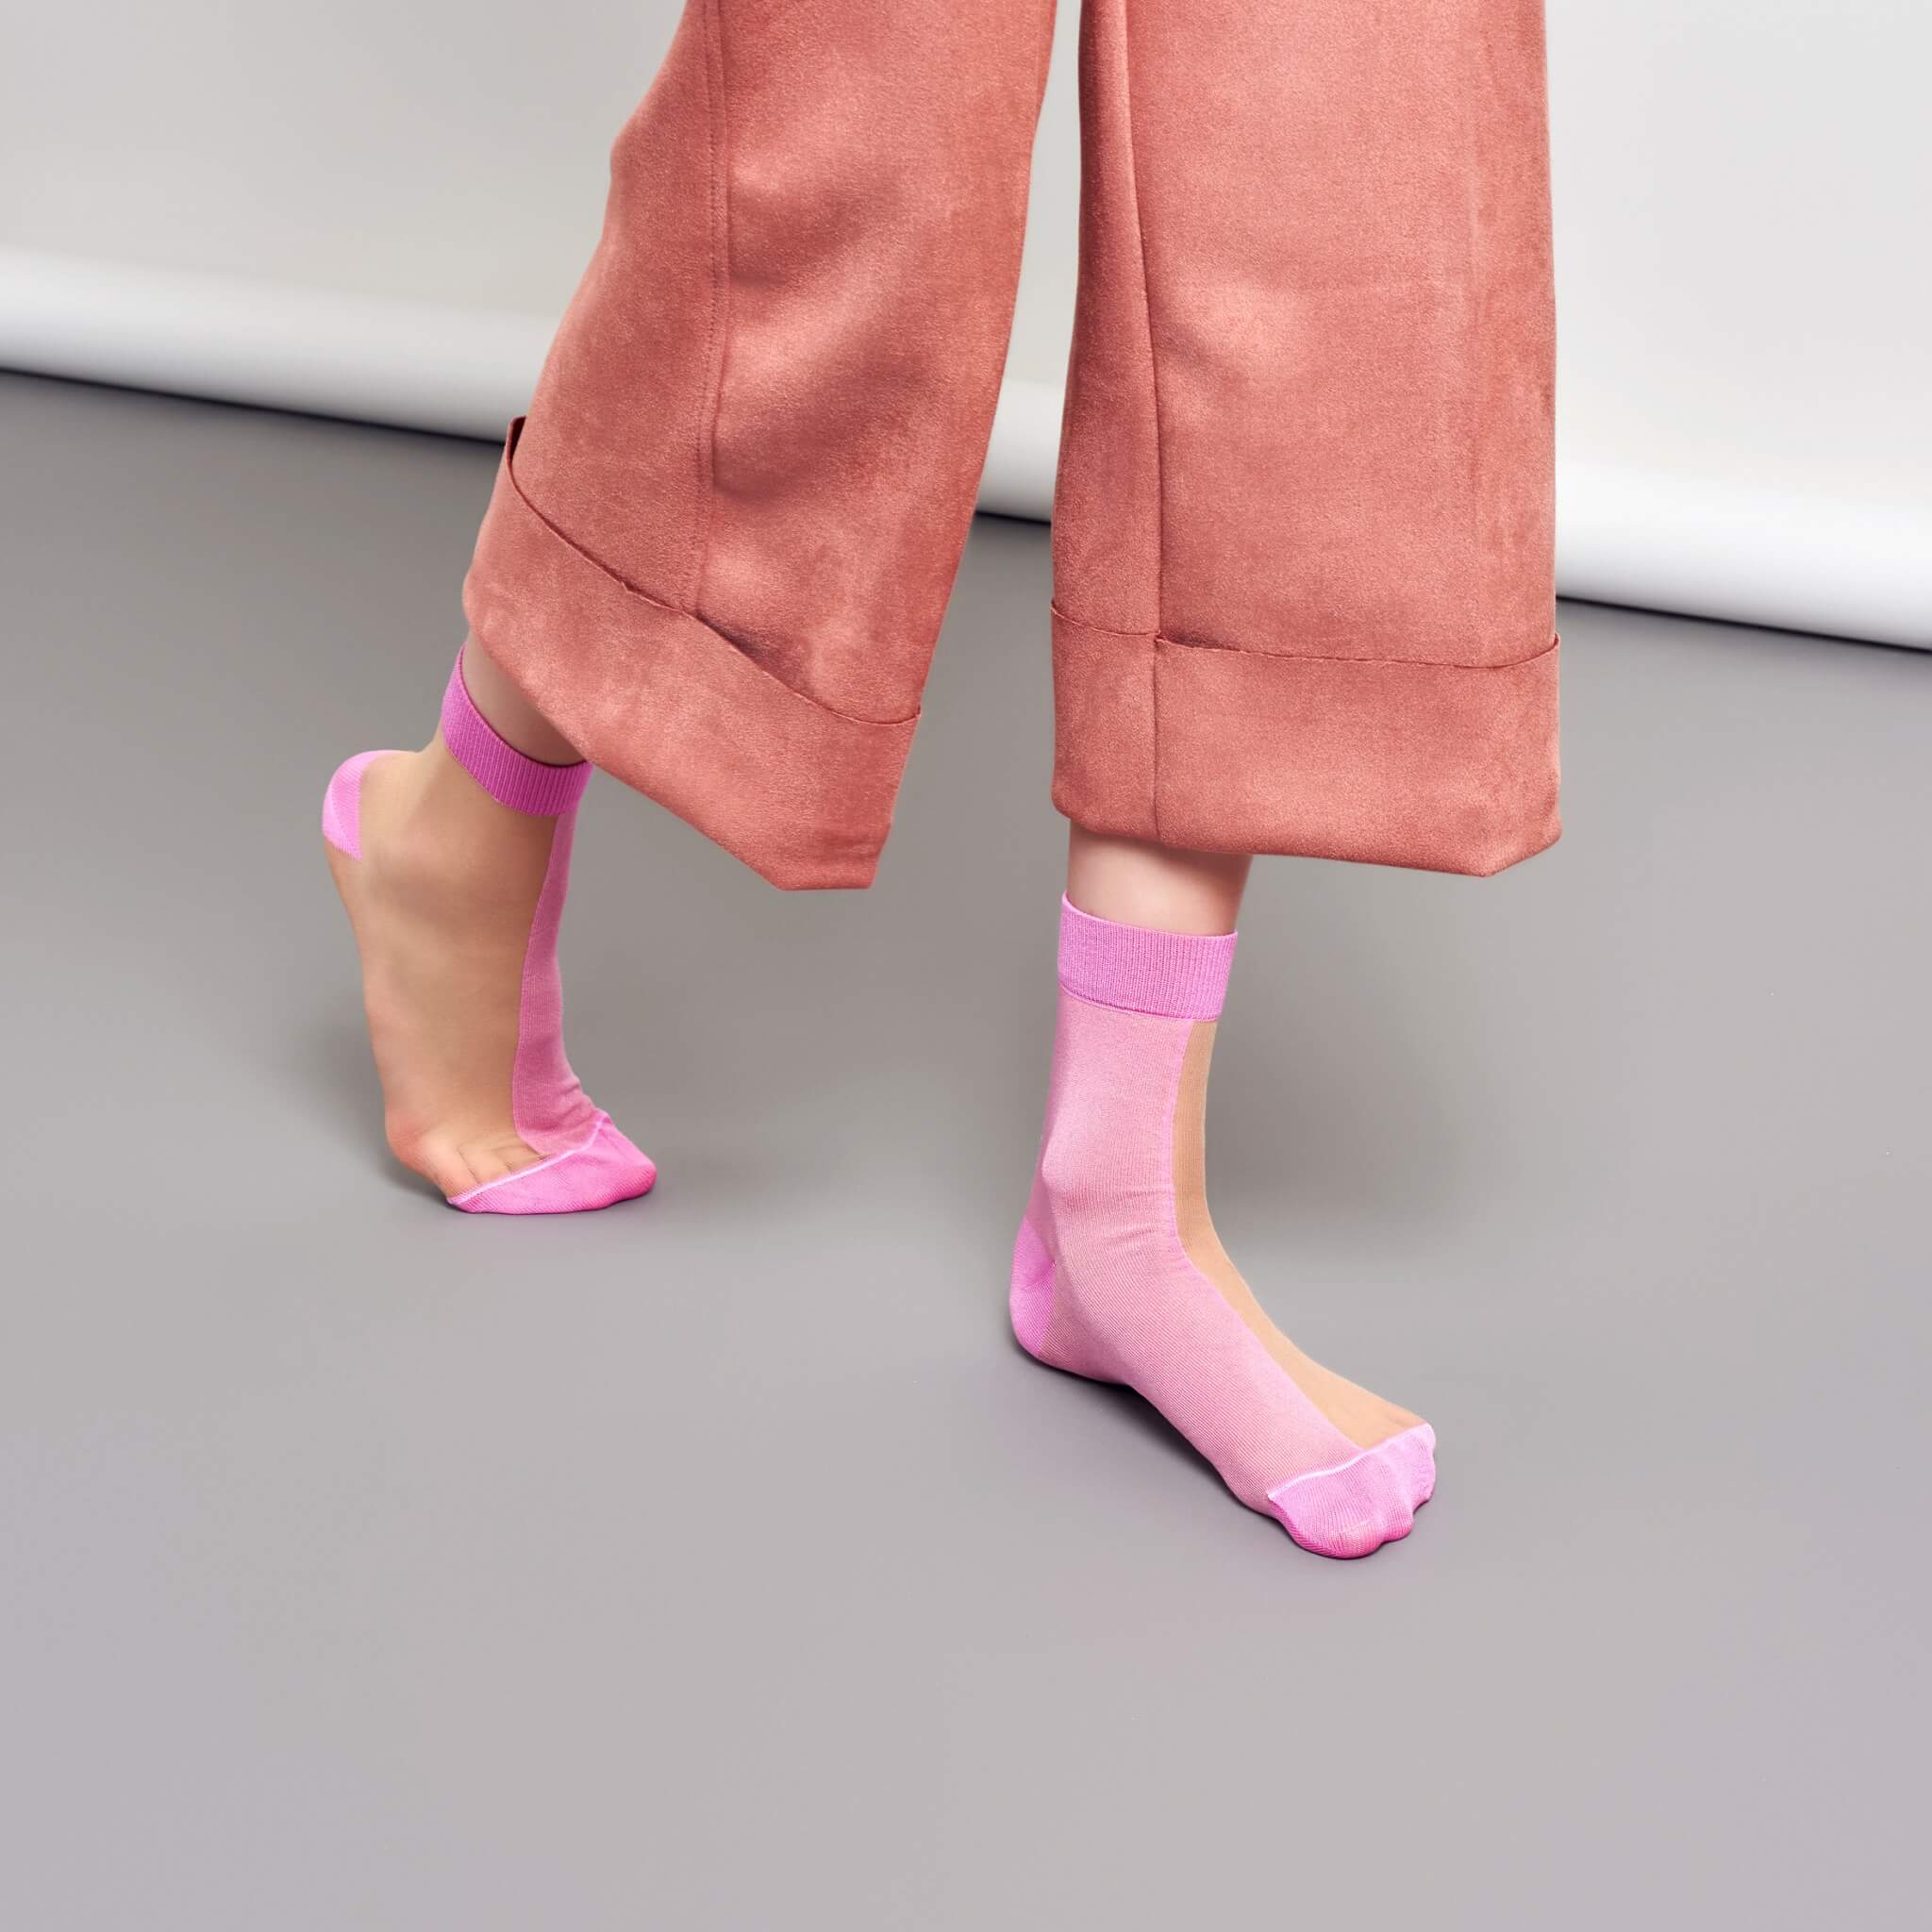 Dámské růžové ponožky Happy Socks Filippa // kolekce Hysteria